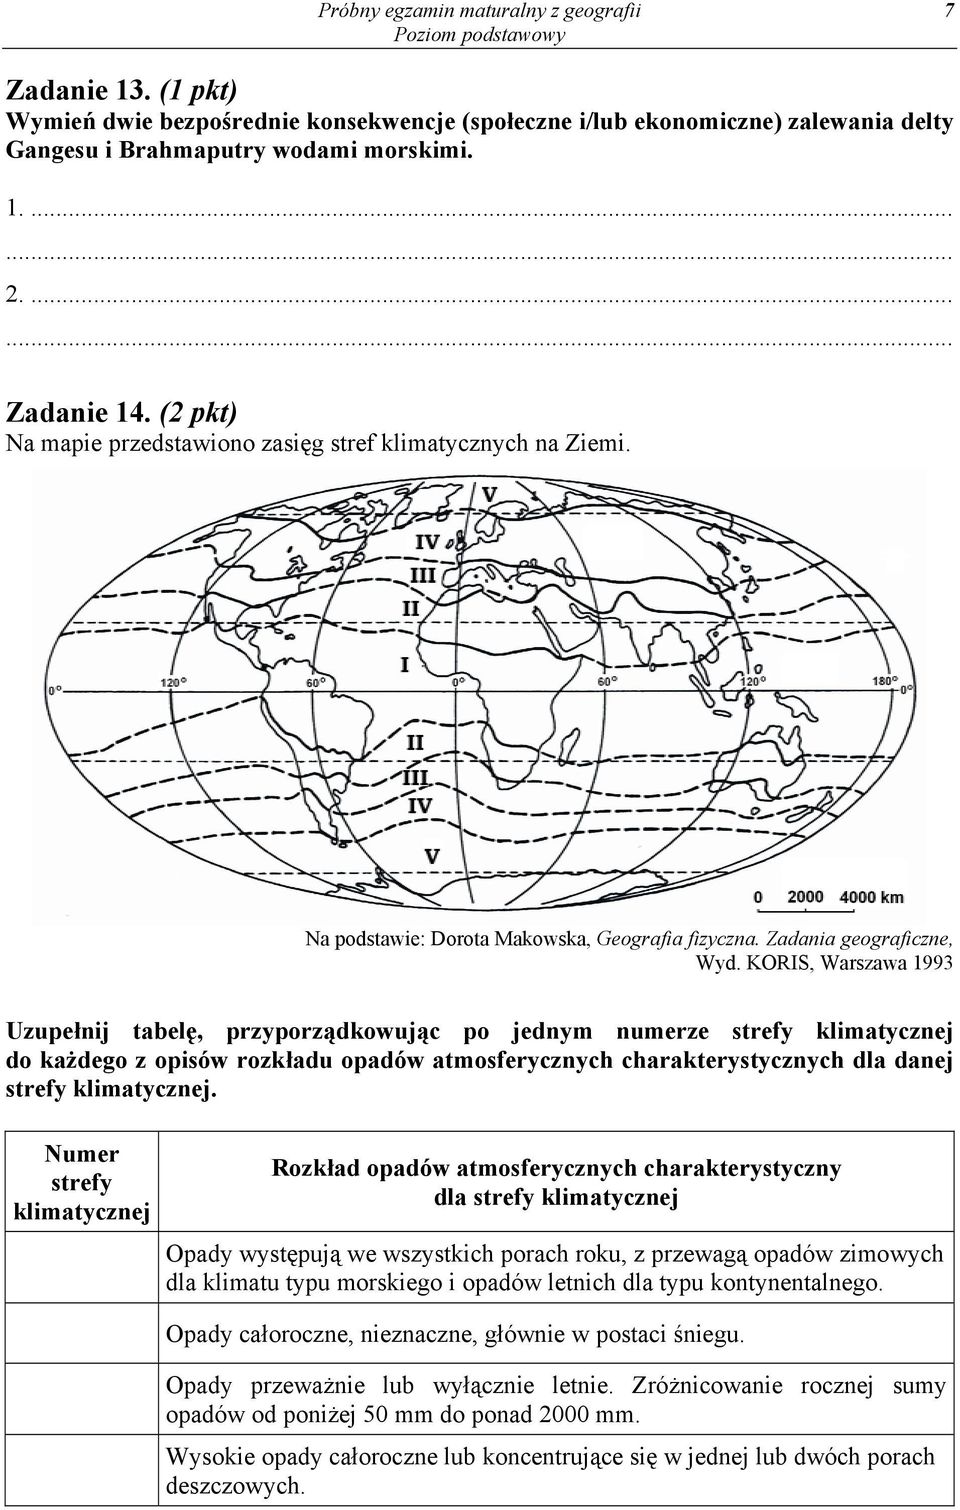 KORIS, Warszawa 1993 Uzupełnij tabelę, przyporządkowując po jednym numerze strefy klimatycznej do każdego z opisów rozkładu opadów atmosferycznych charakterystycznych dla danej strefy klimatycznej.